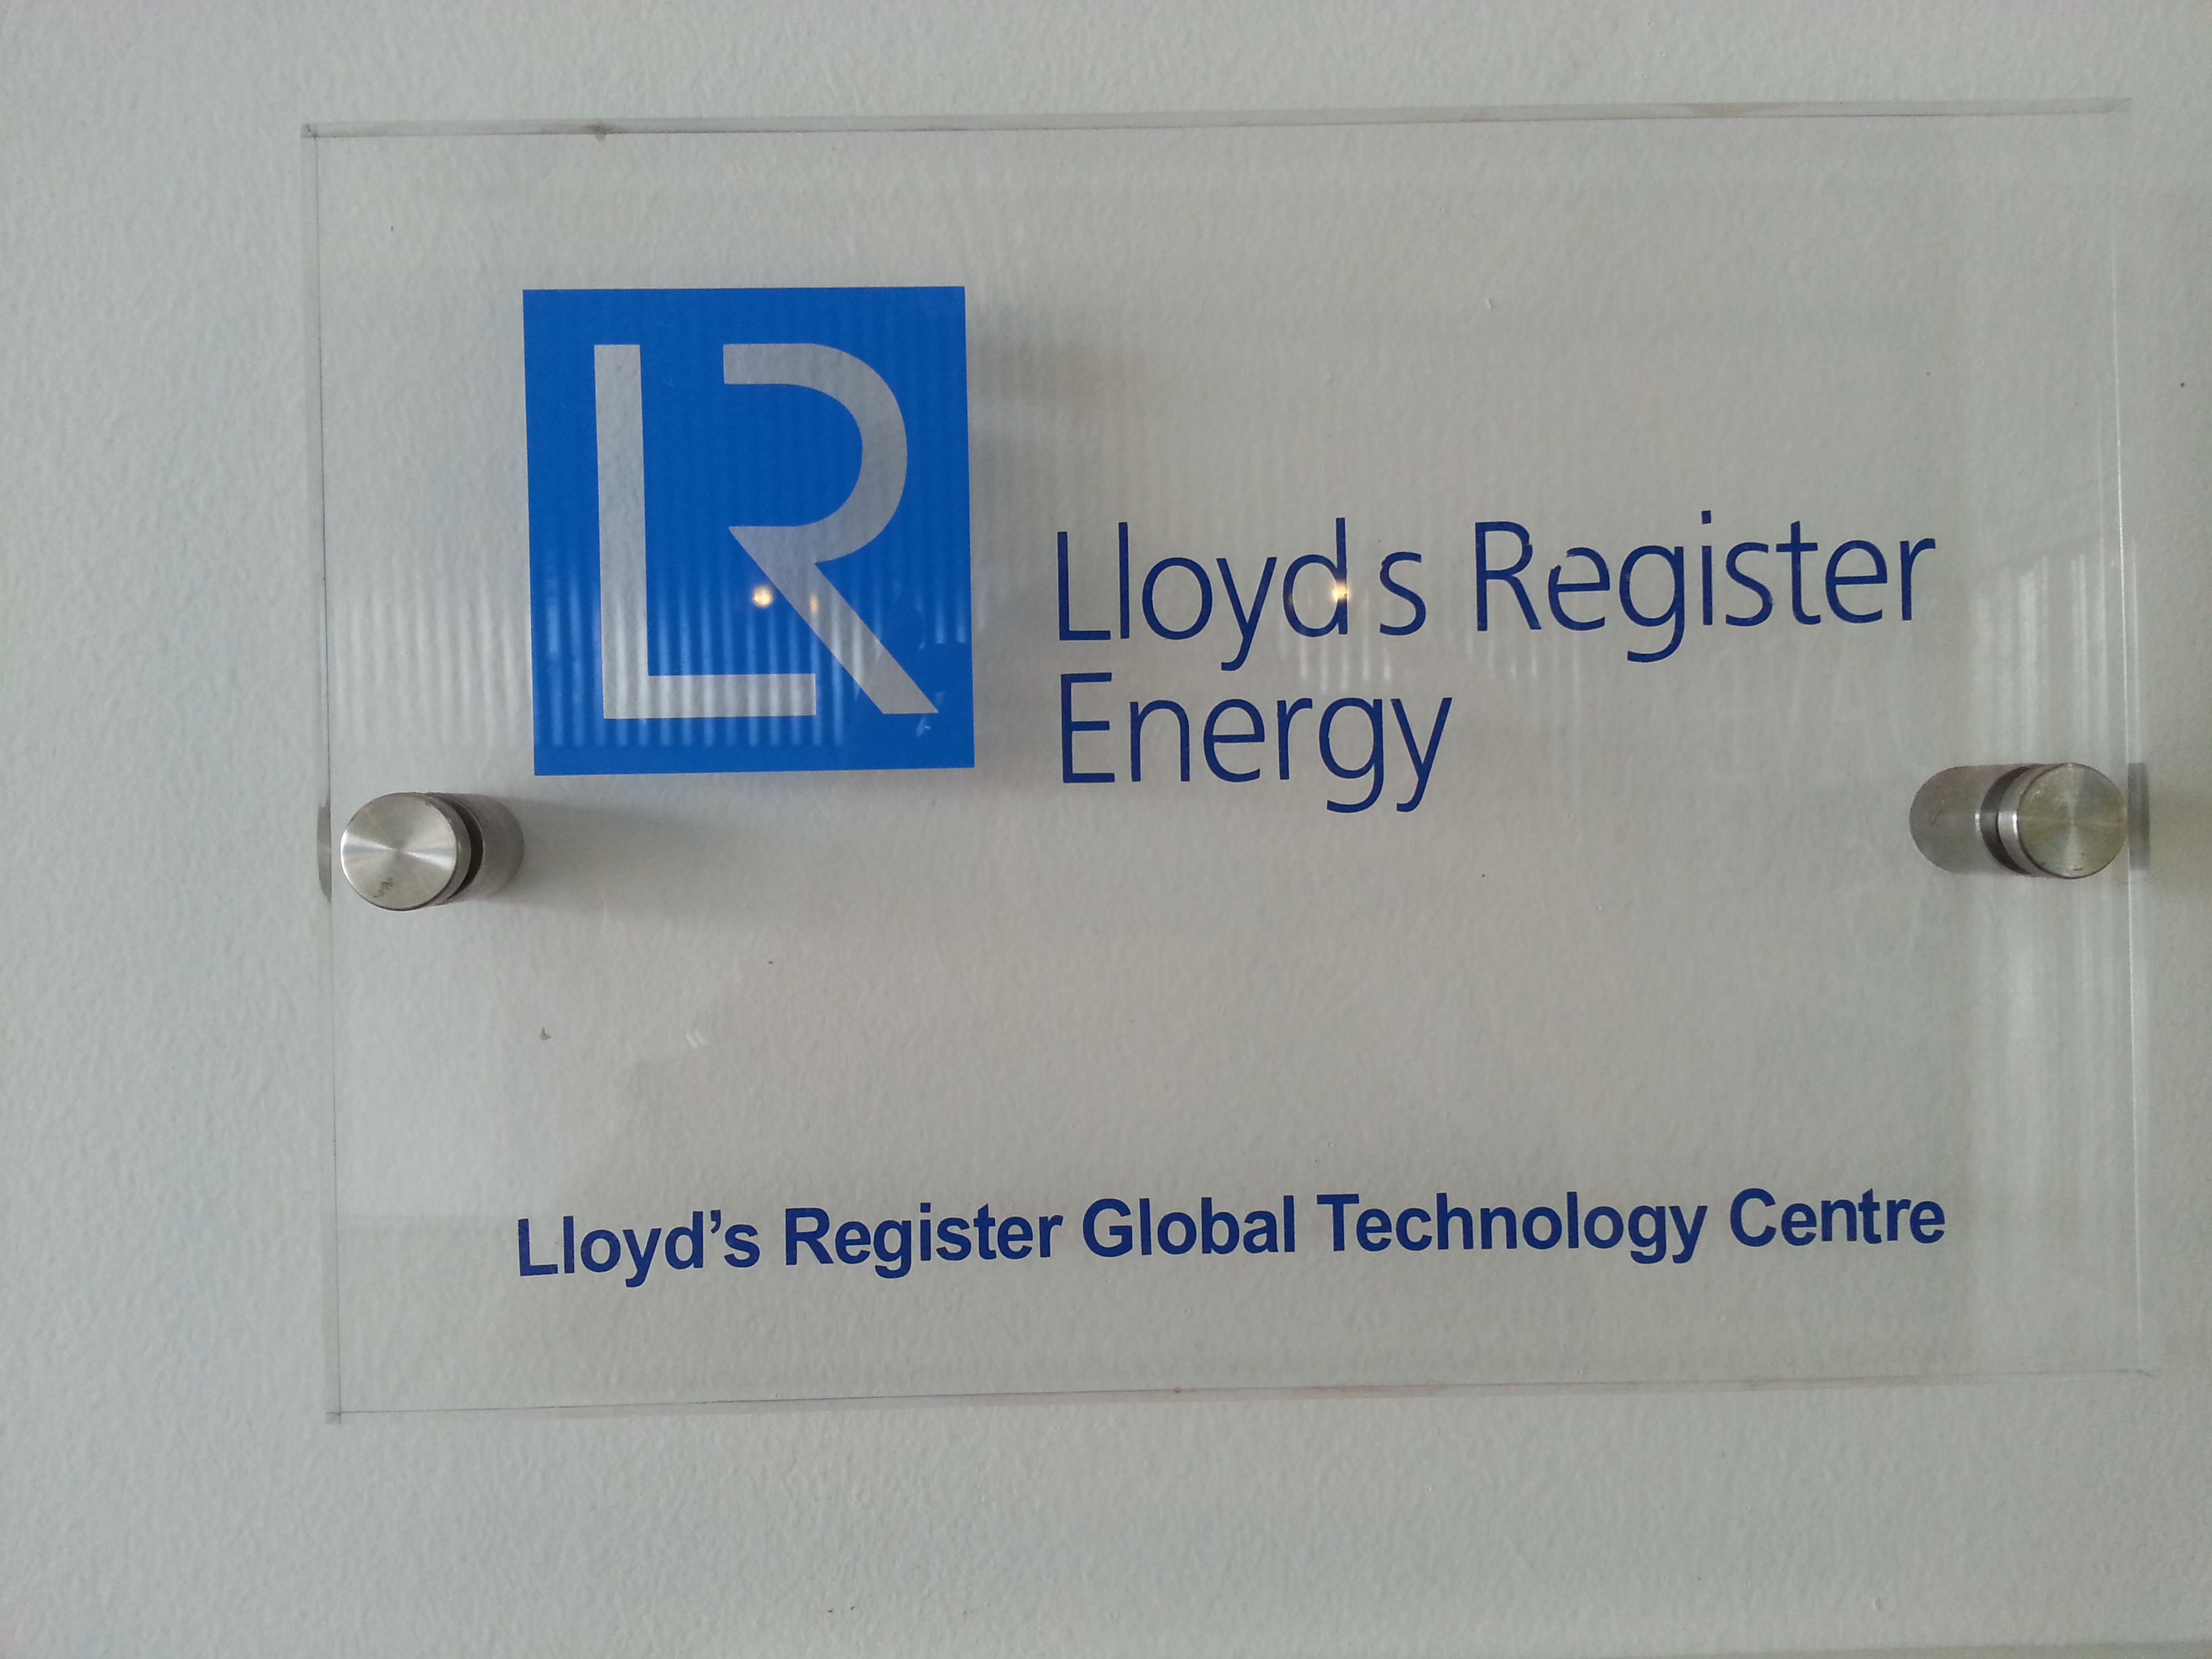 Lloyds Register Energy